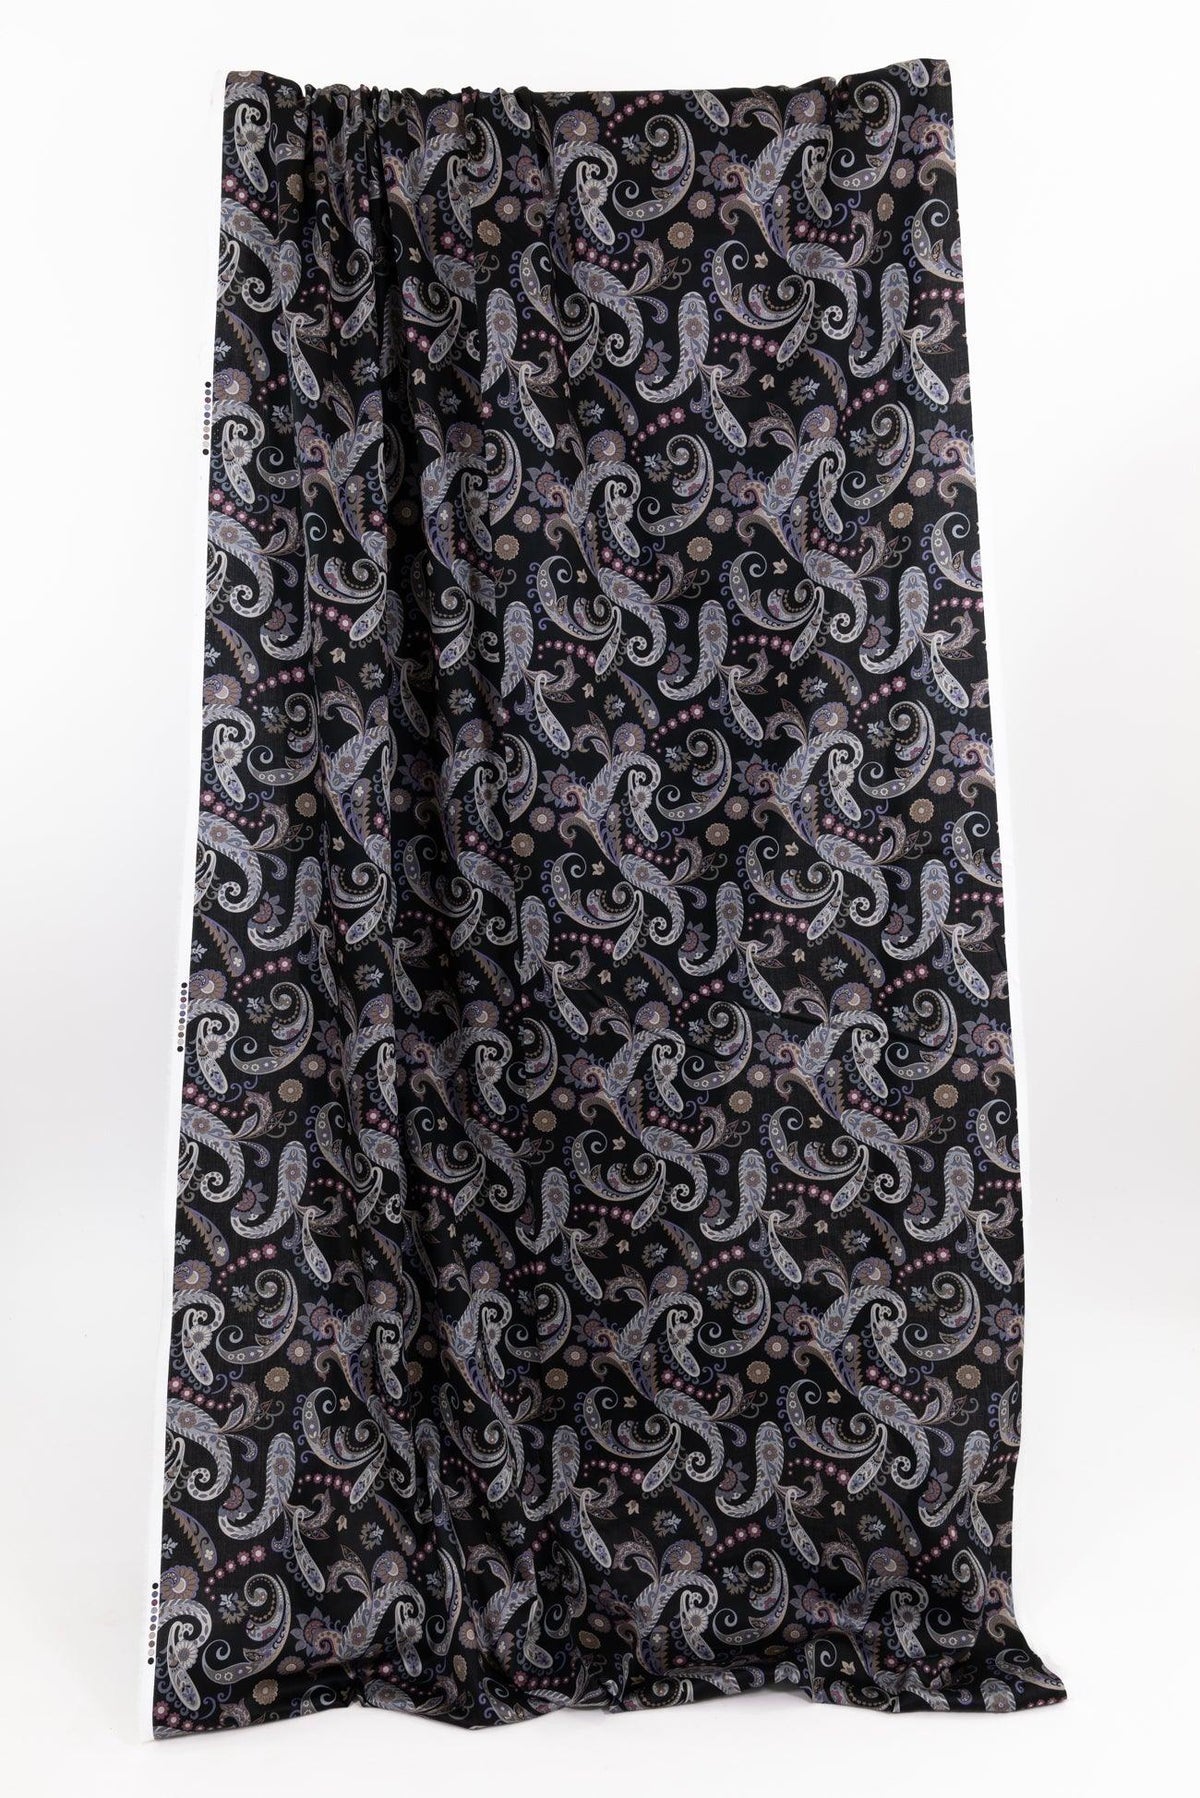 Alcott Paisley Japanese Cotton Woven - Marcy Tilton Fabrics